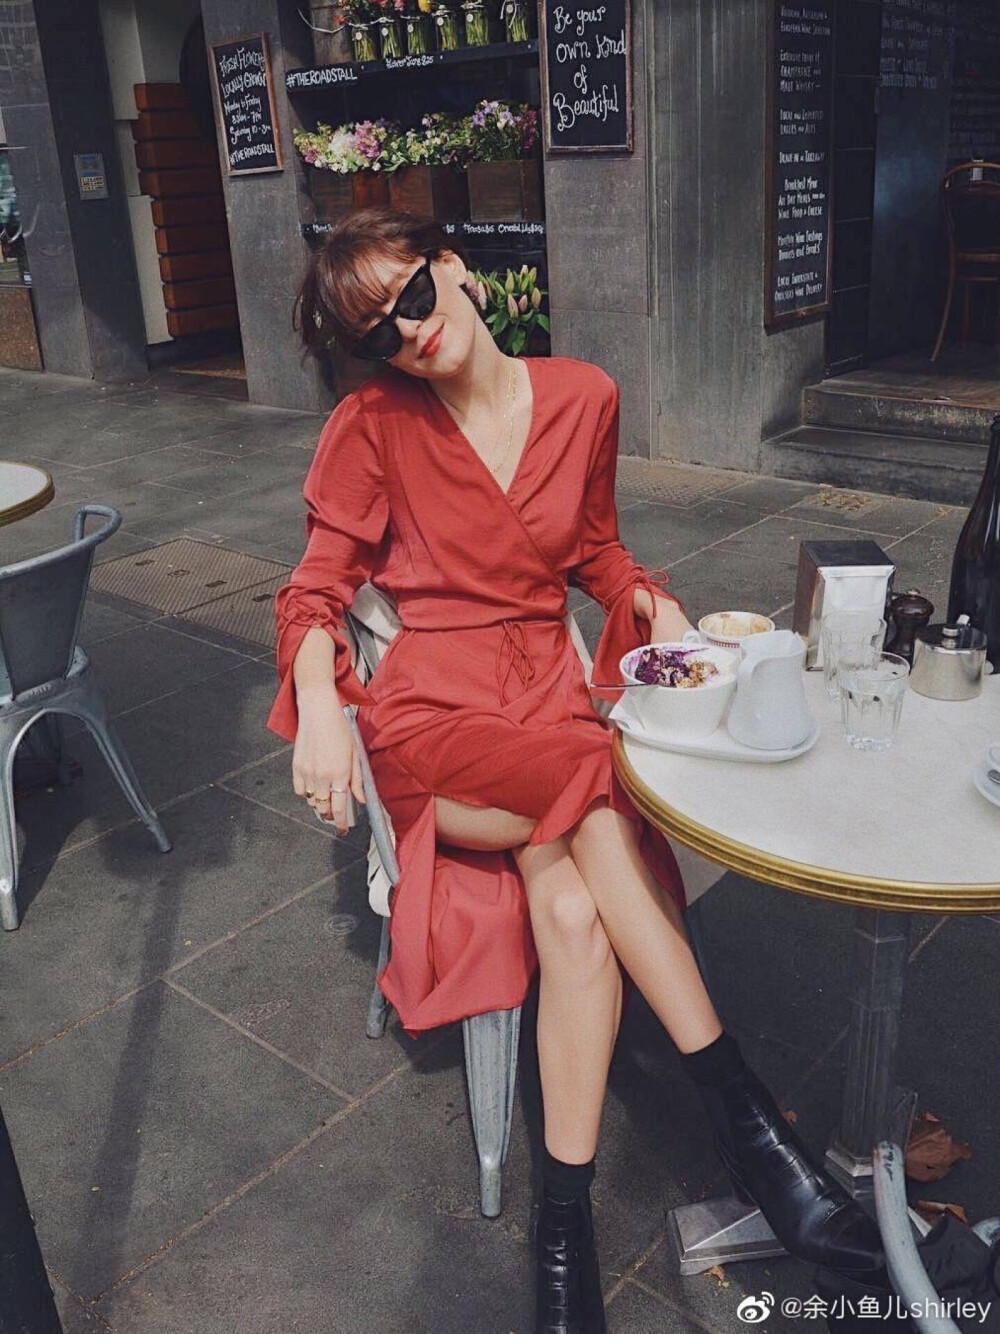 时尚|慵懒休闲的法式穿搭之红色系
澳大利亚时尚博主Jessica Alizzi,发现她的搭配喜欢白色，米色，也很喜欢红色,不轻易尝试红色单品的我看了,决定也要去试试,从红色上衣开始吧,哈哈!#时尚博主##法式穿搭# ​